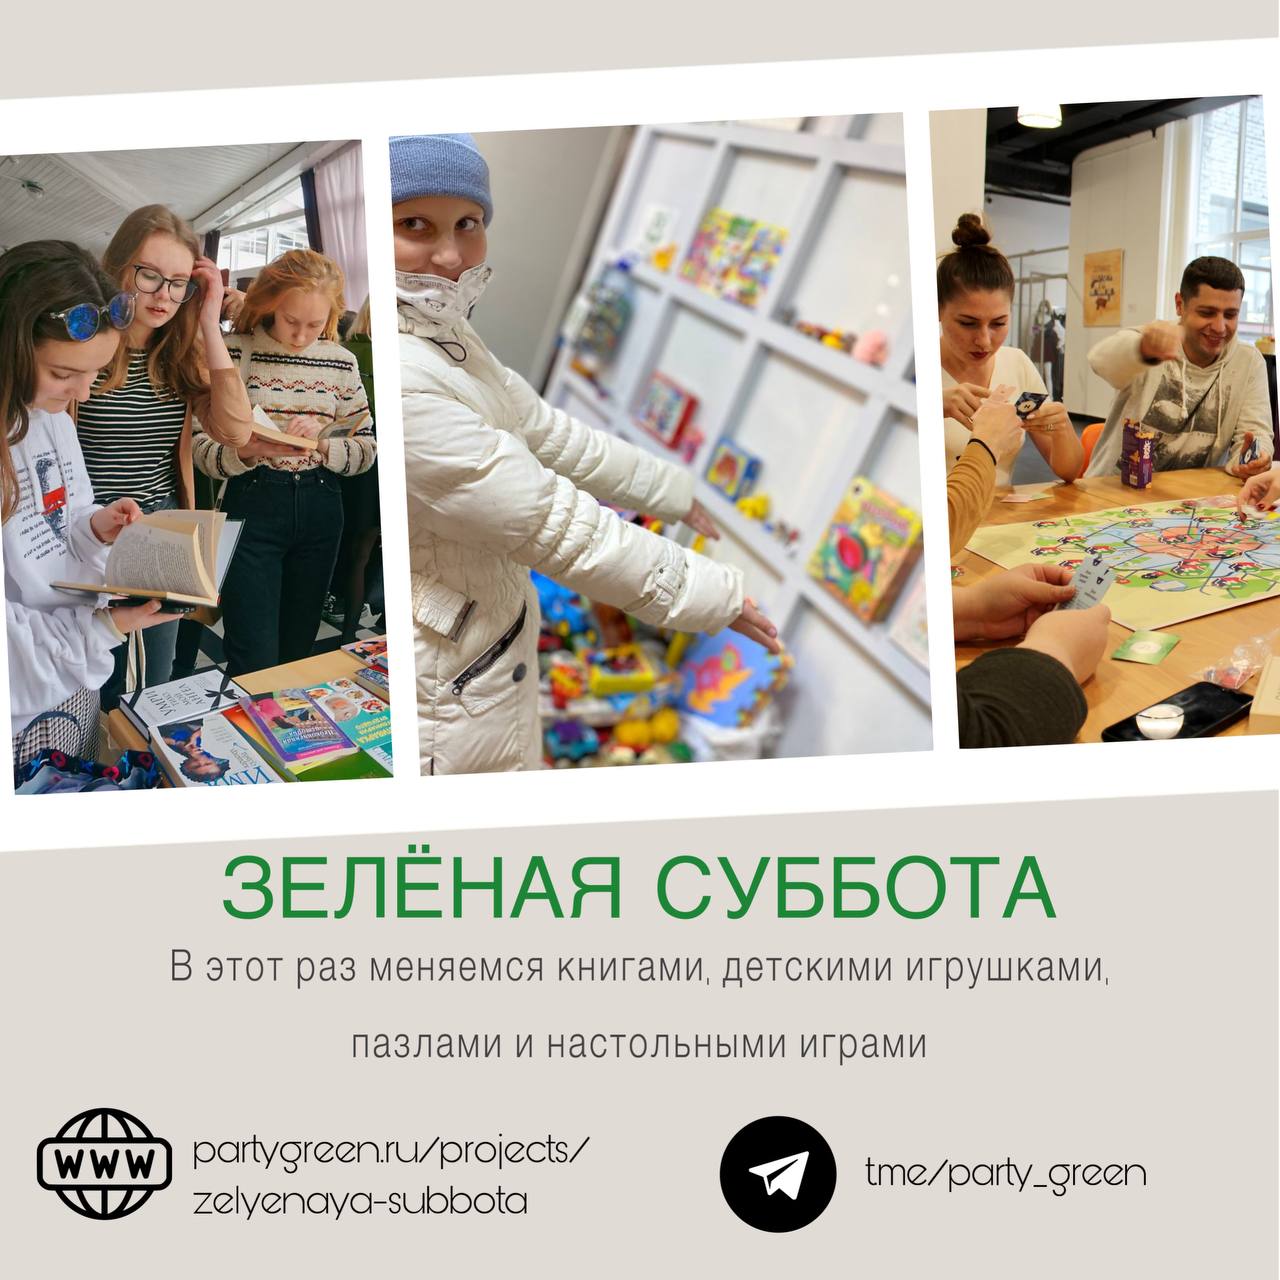 В Ярославле пройдет акция по обмену книгами, настольными играми и детскими игрушками